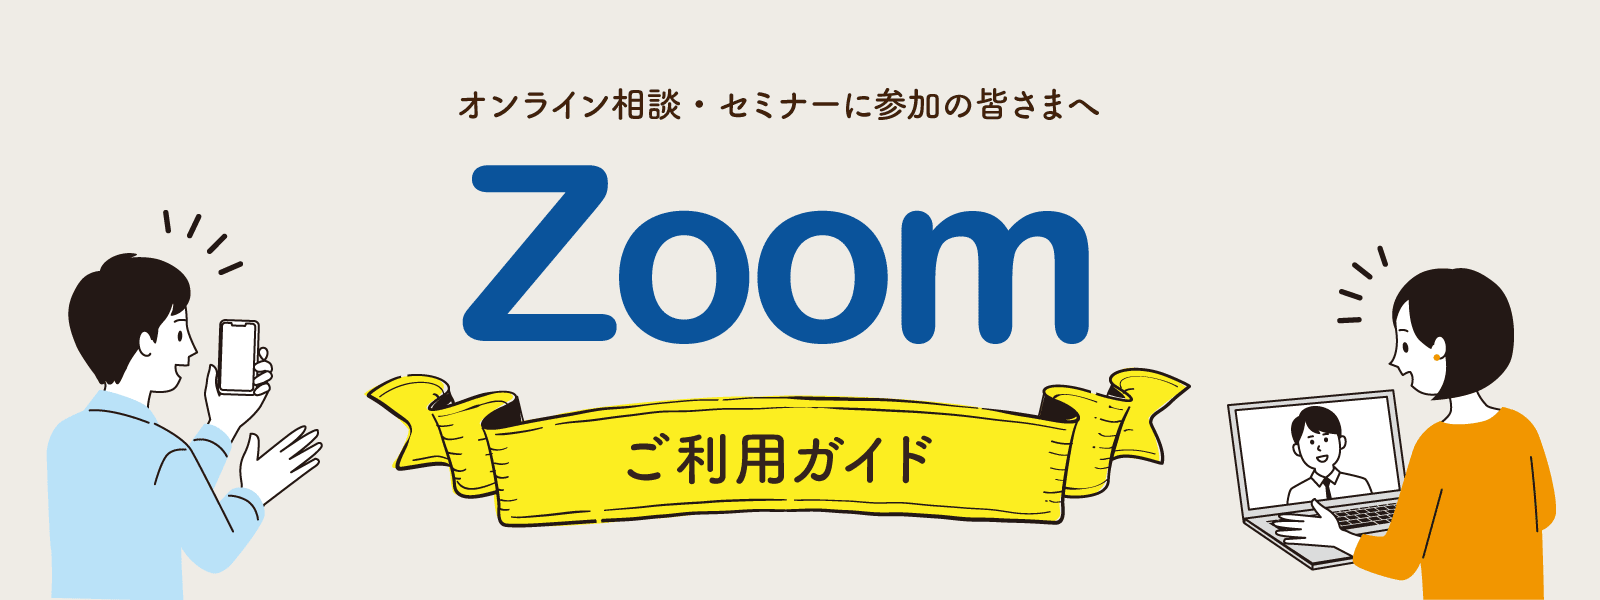 Zoomご利用ガイド | お知らせ